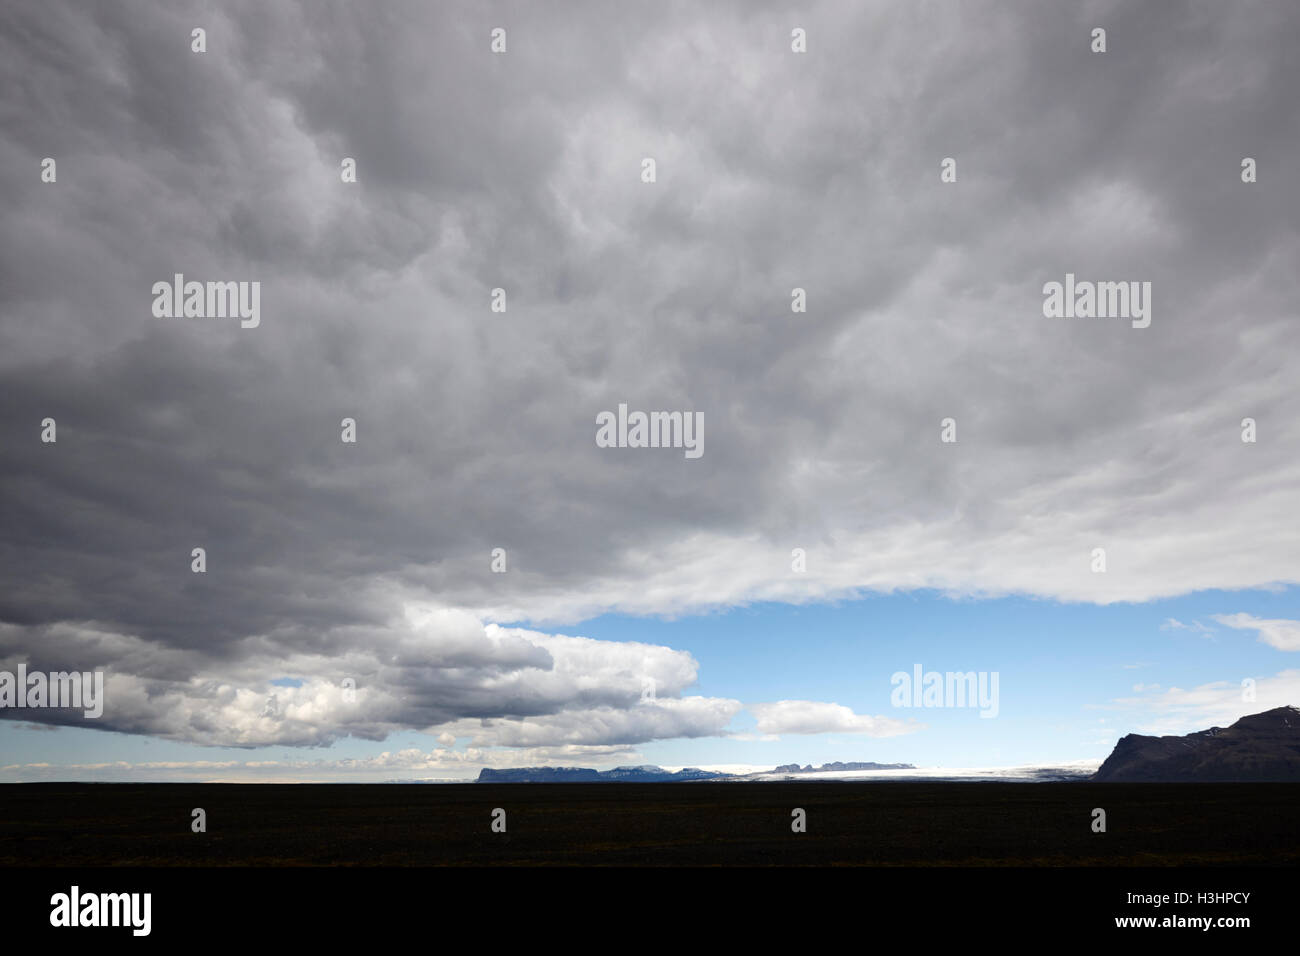 Des nuages de pluie et la météo/se déplacer sur ring road hringvegur dans toute la plaine sablonneuse de skeidararsandur Islande sud Banque D'Images